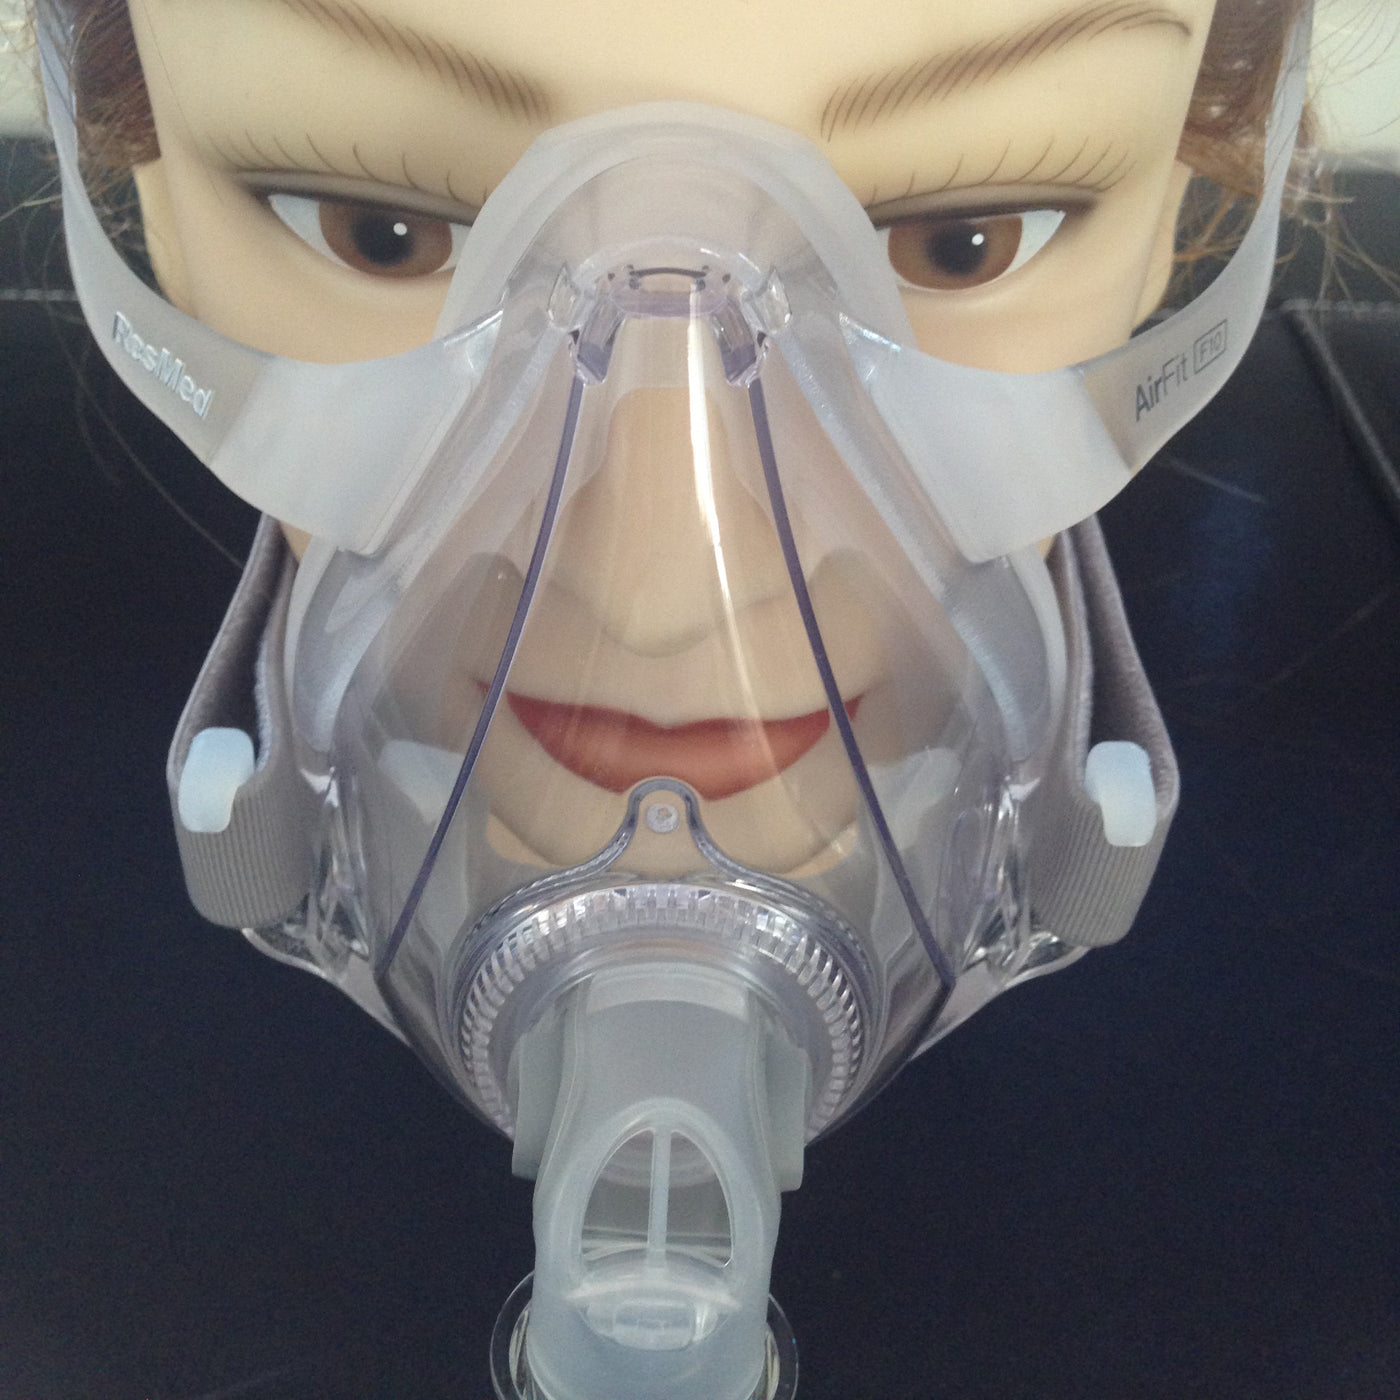 Rejsende købmand dækning Til fods ResMed AirFit F10 FullFace CPAP mask w headgear all size him / her –  Myhappierself